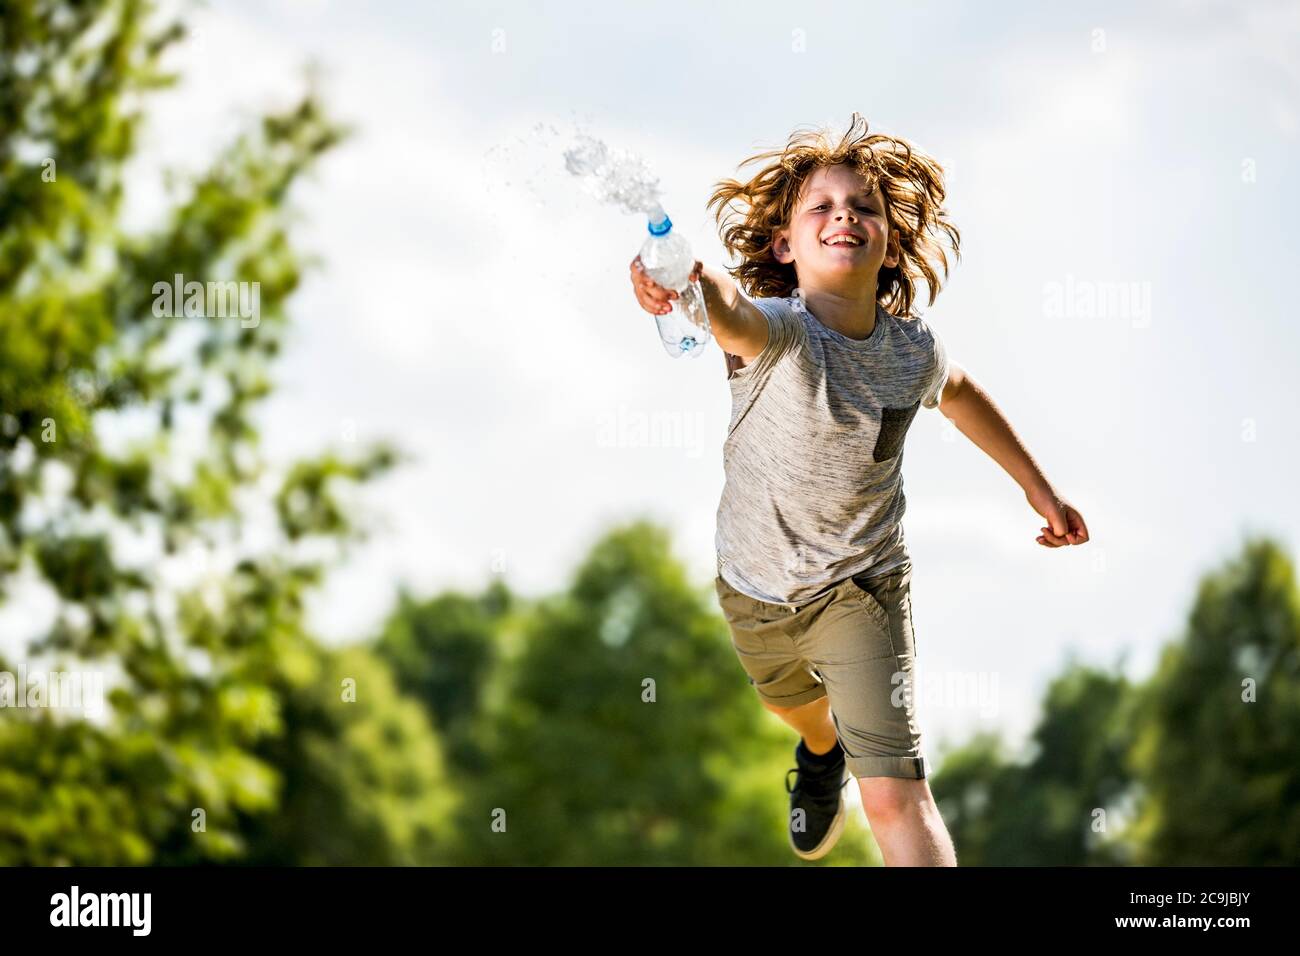 Junge spritzt Wasser aus Plastikflasche, lächelnd, Porträt. Stockfoto